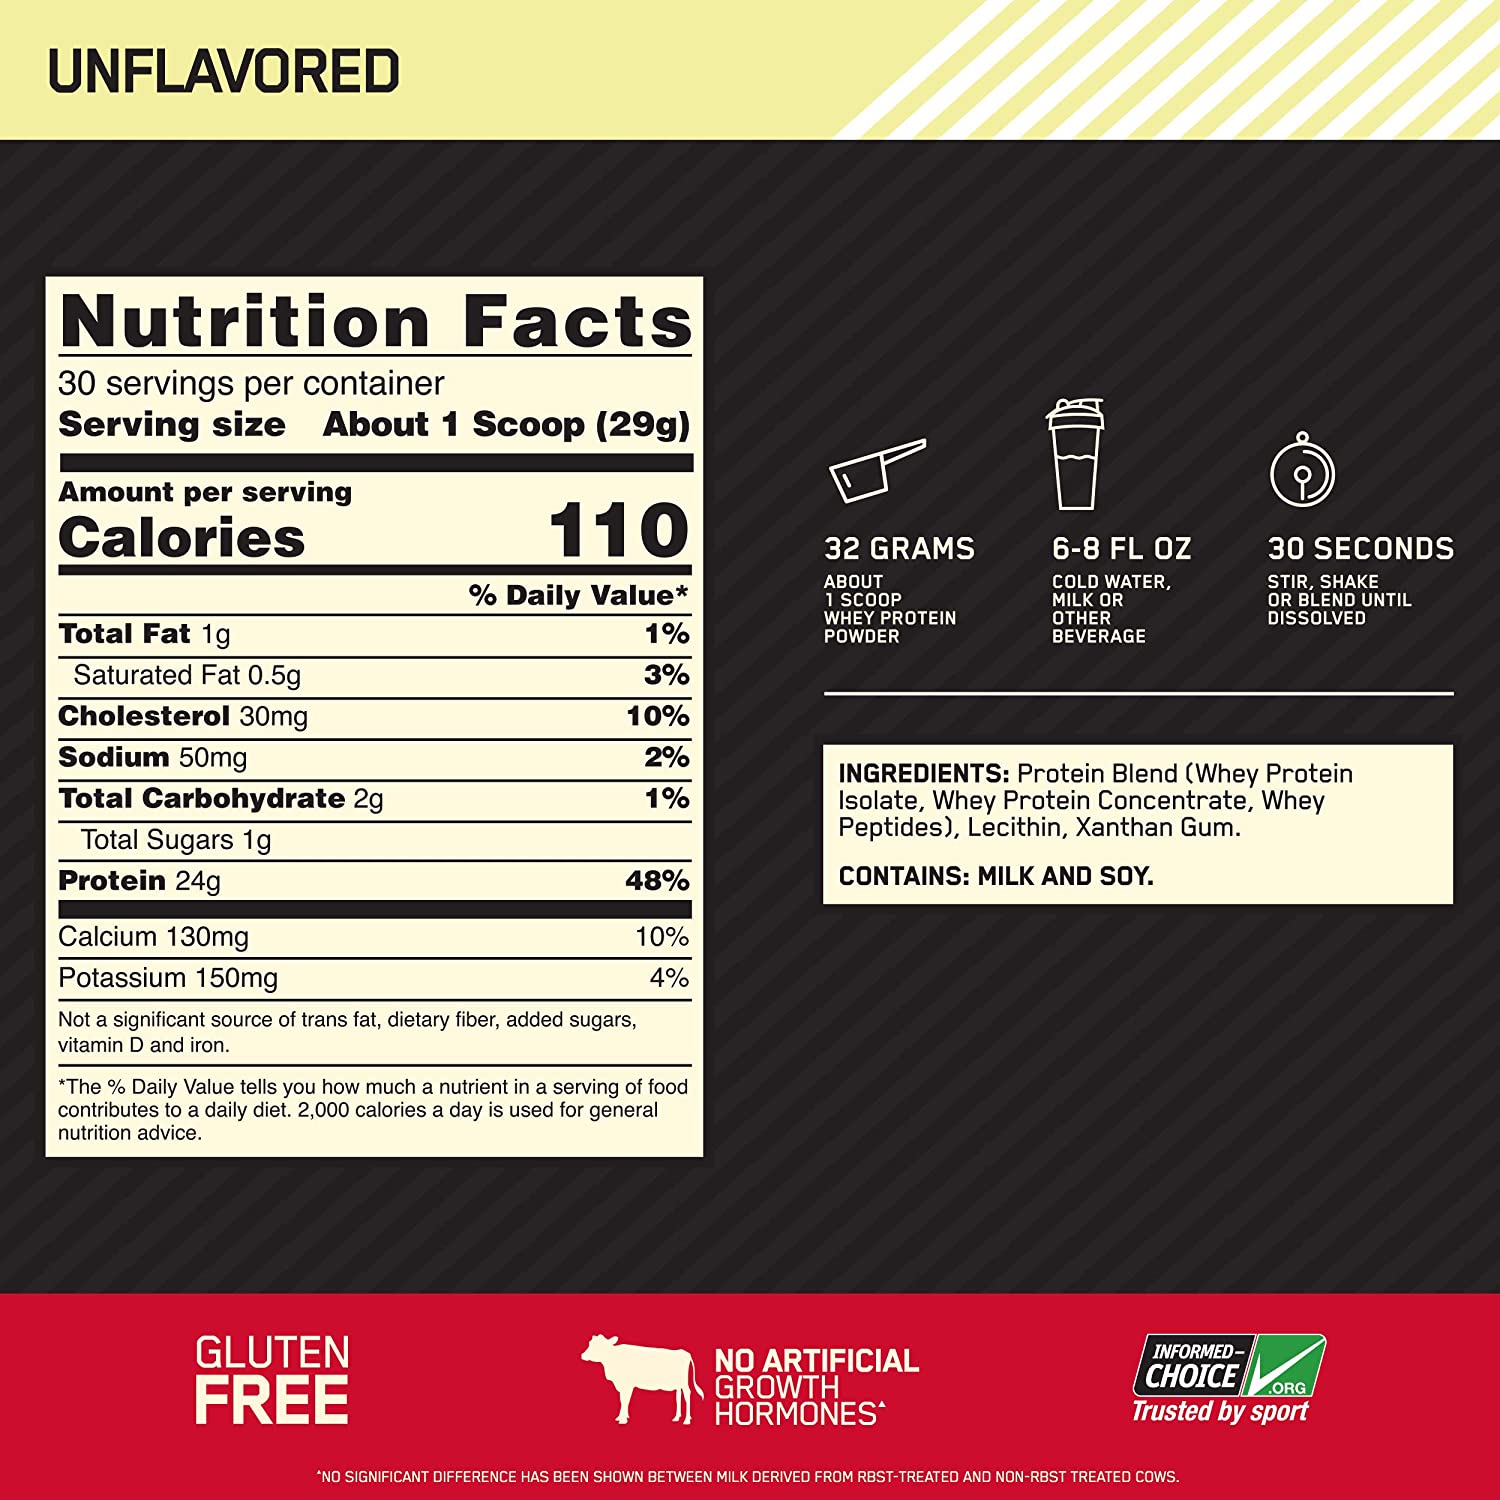 Optimum Nutrition Gold Standard 100% Protéine de lactosérum